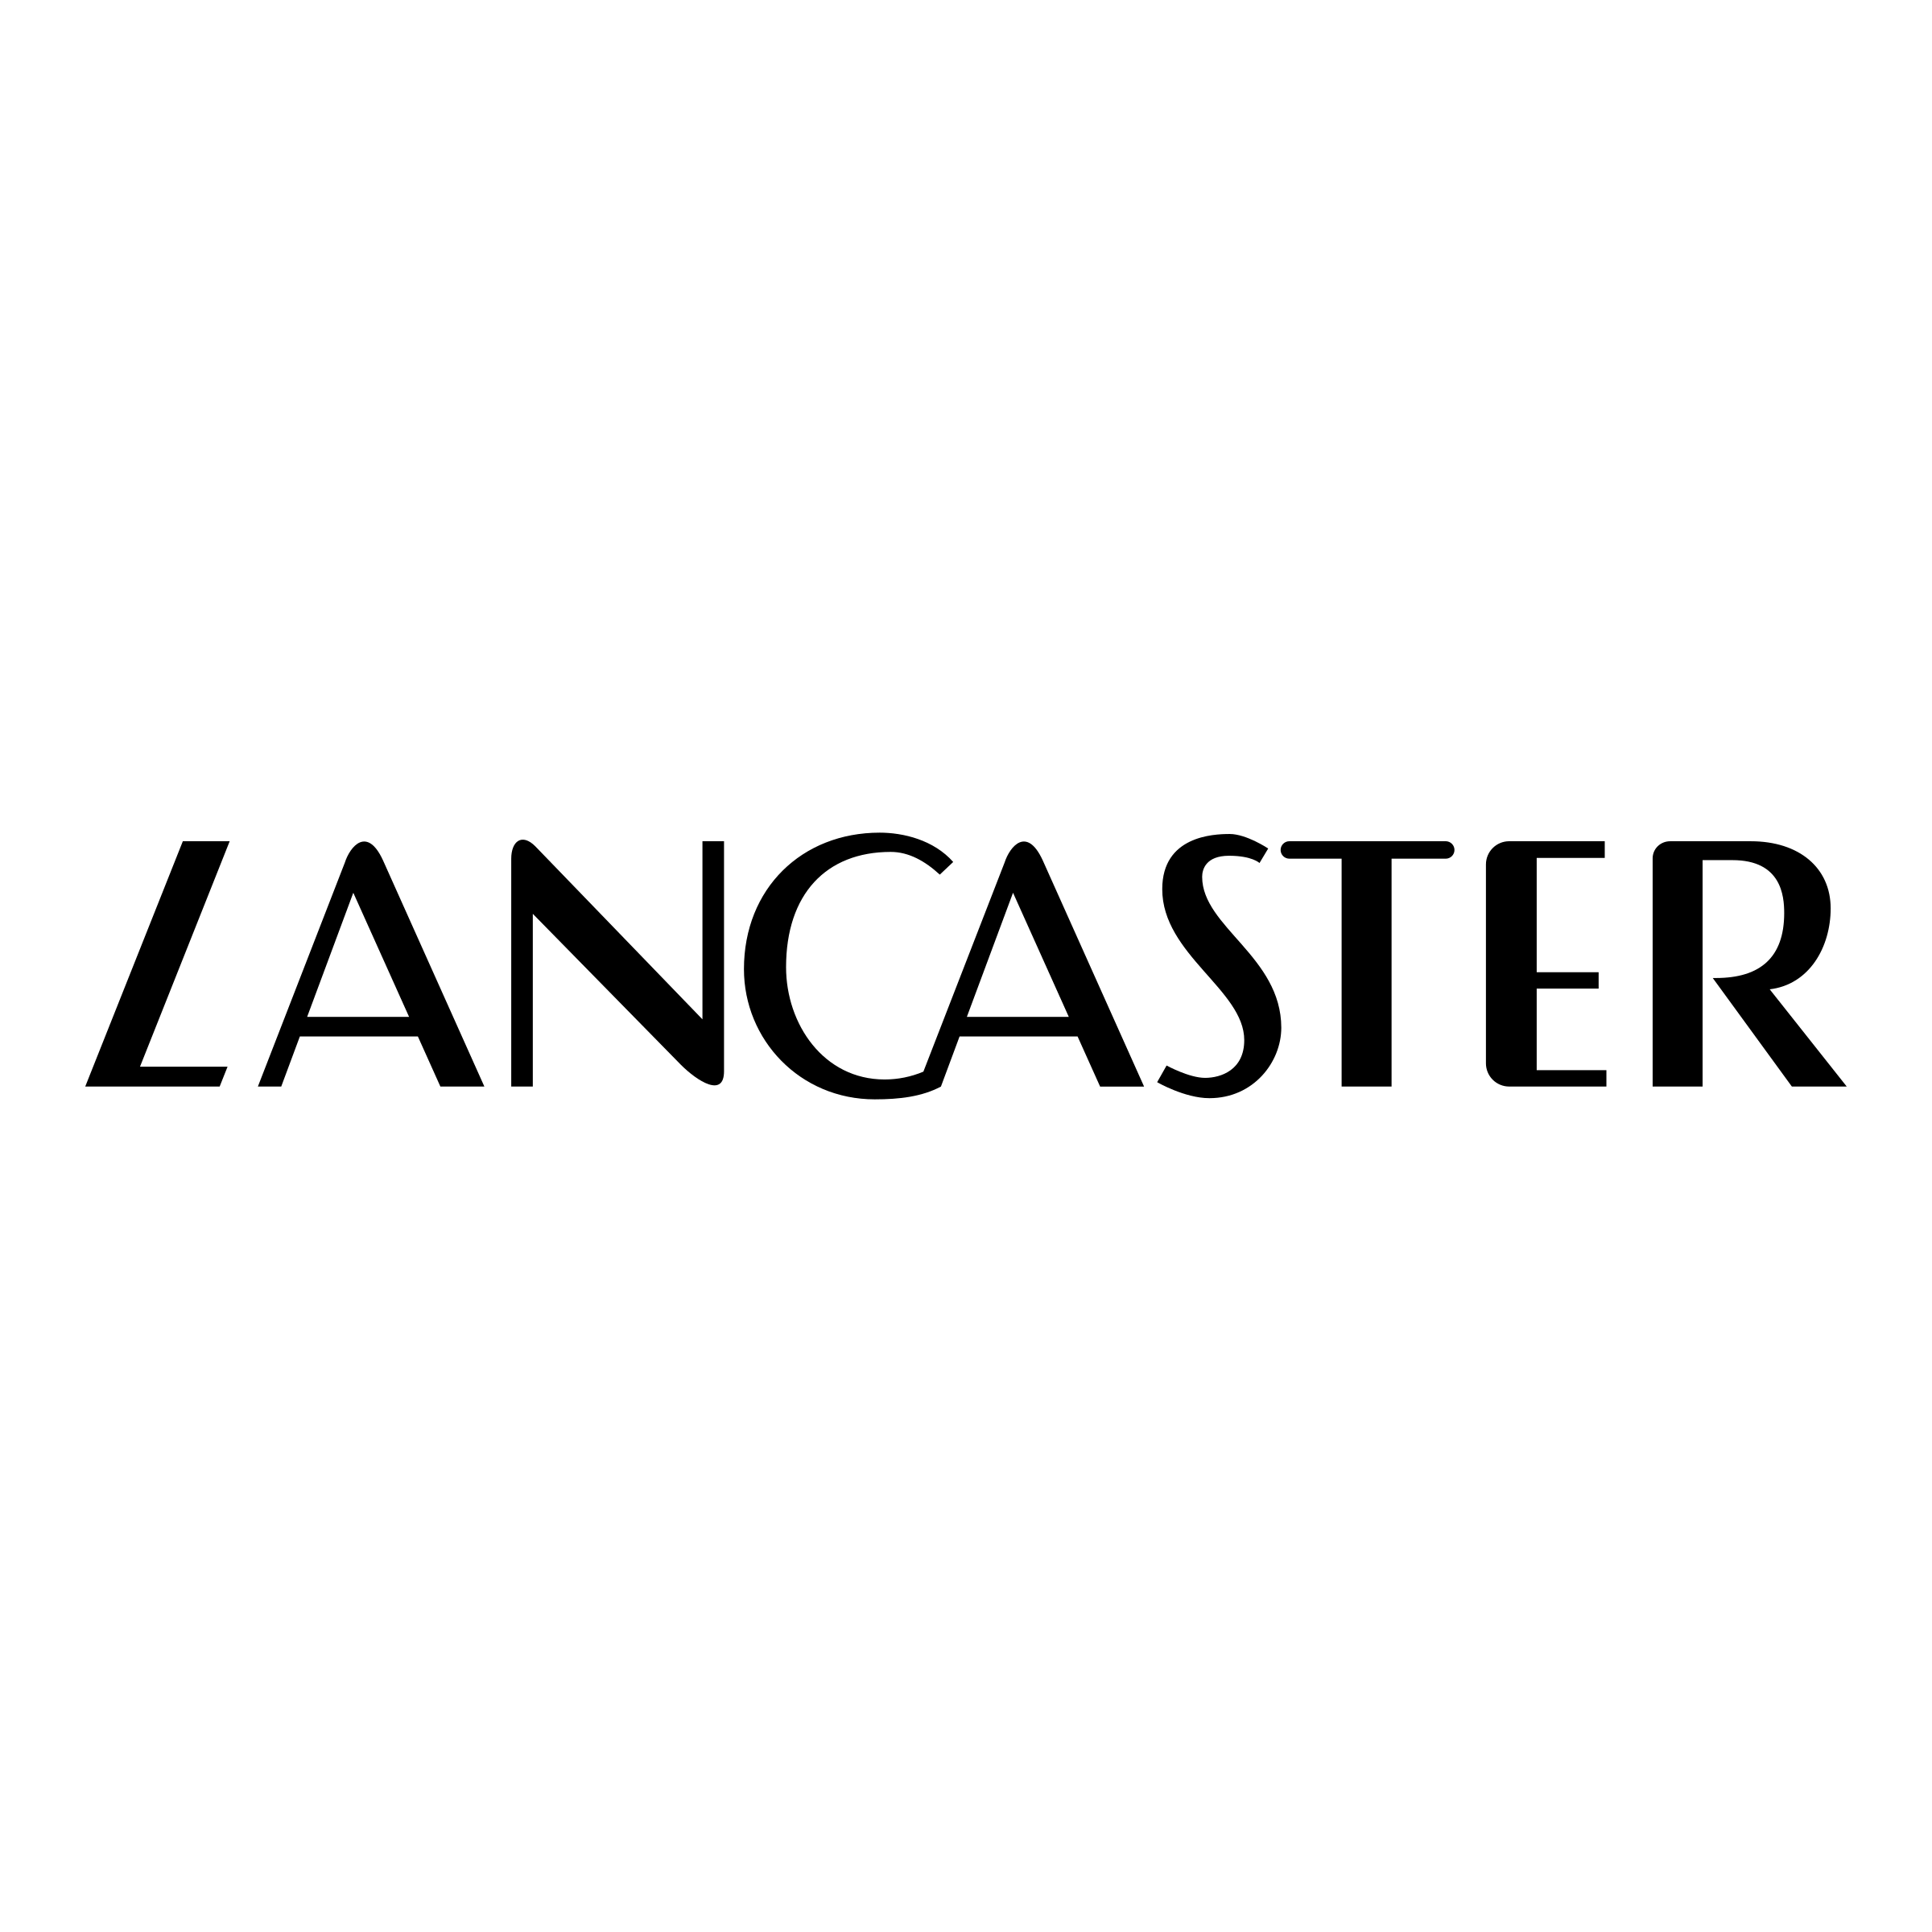 Lancaster Logo - Lancaster Logo PNG Transparent & SVG Vector - Freebie Supply